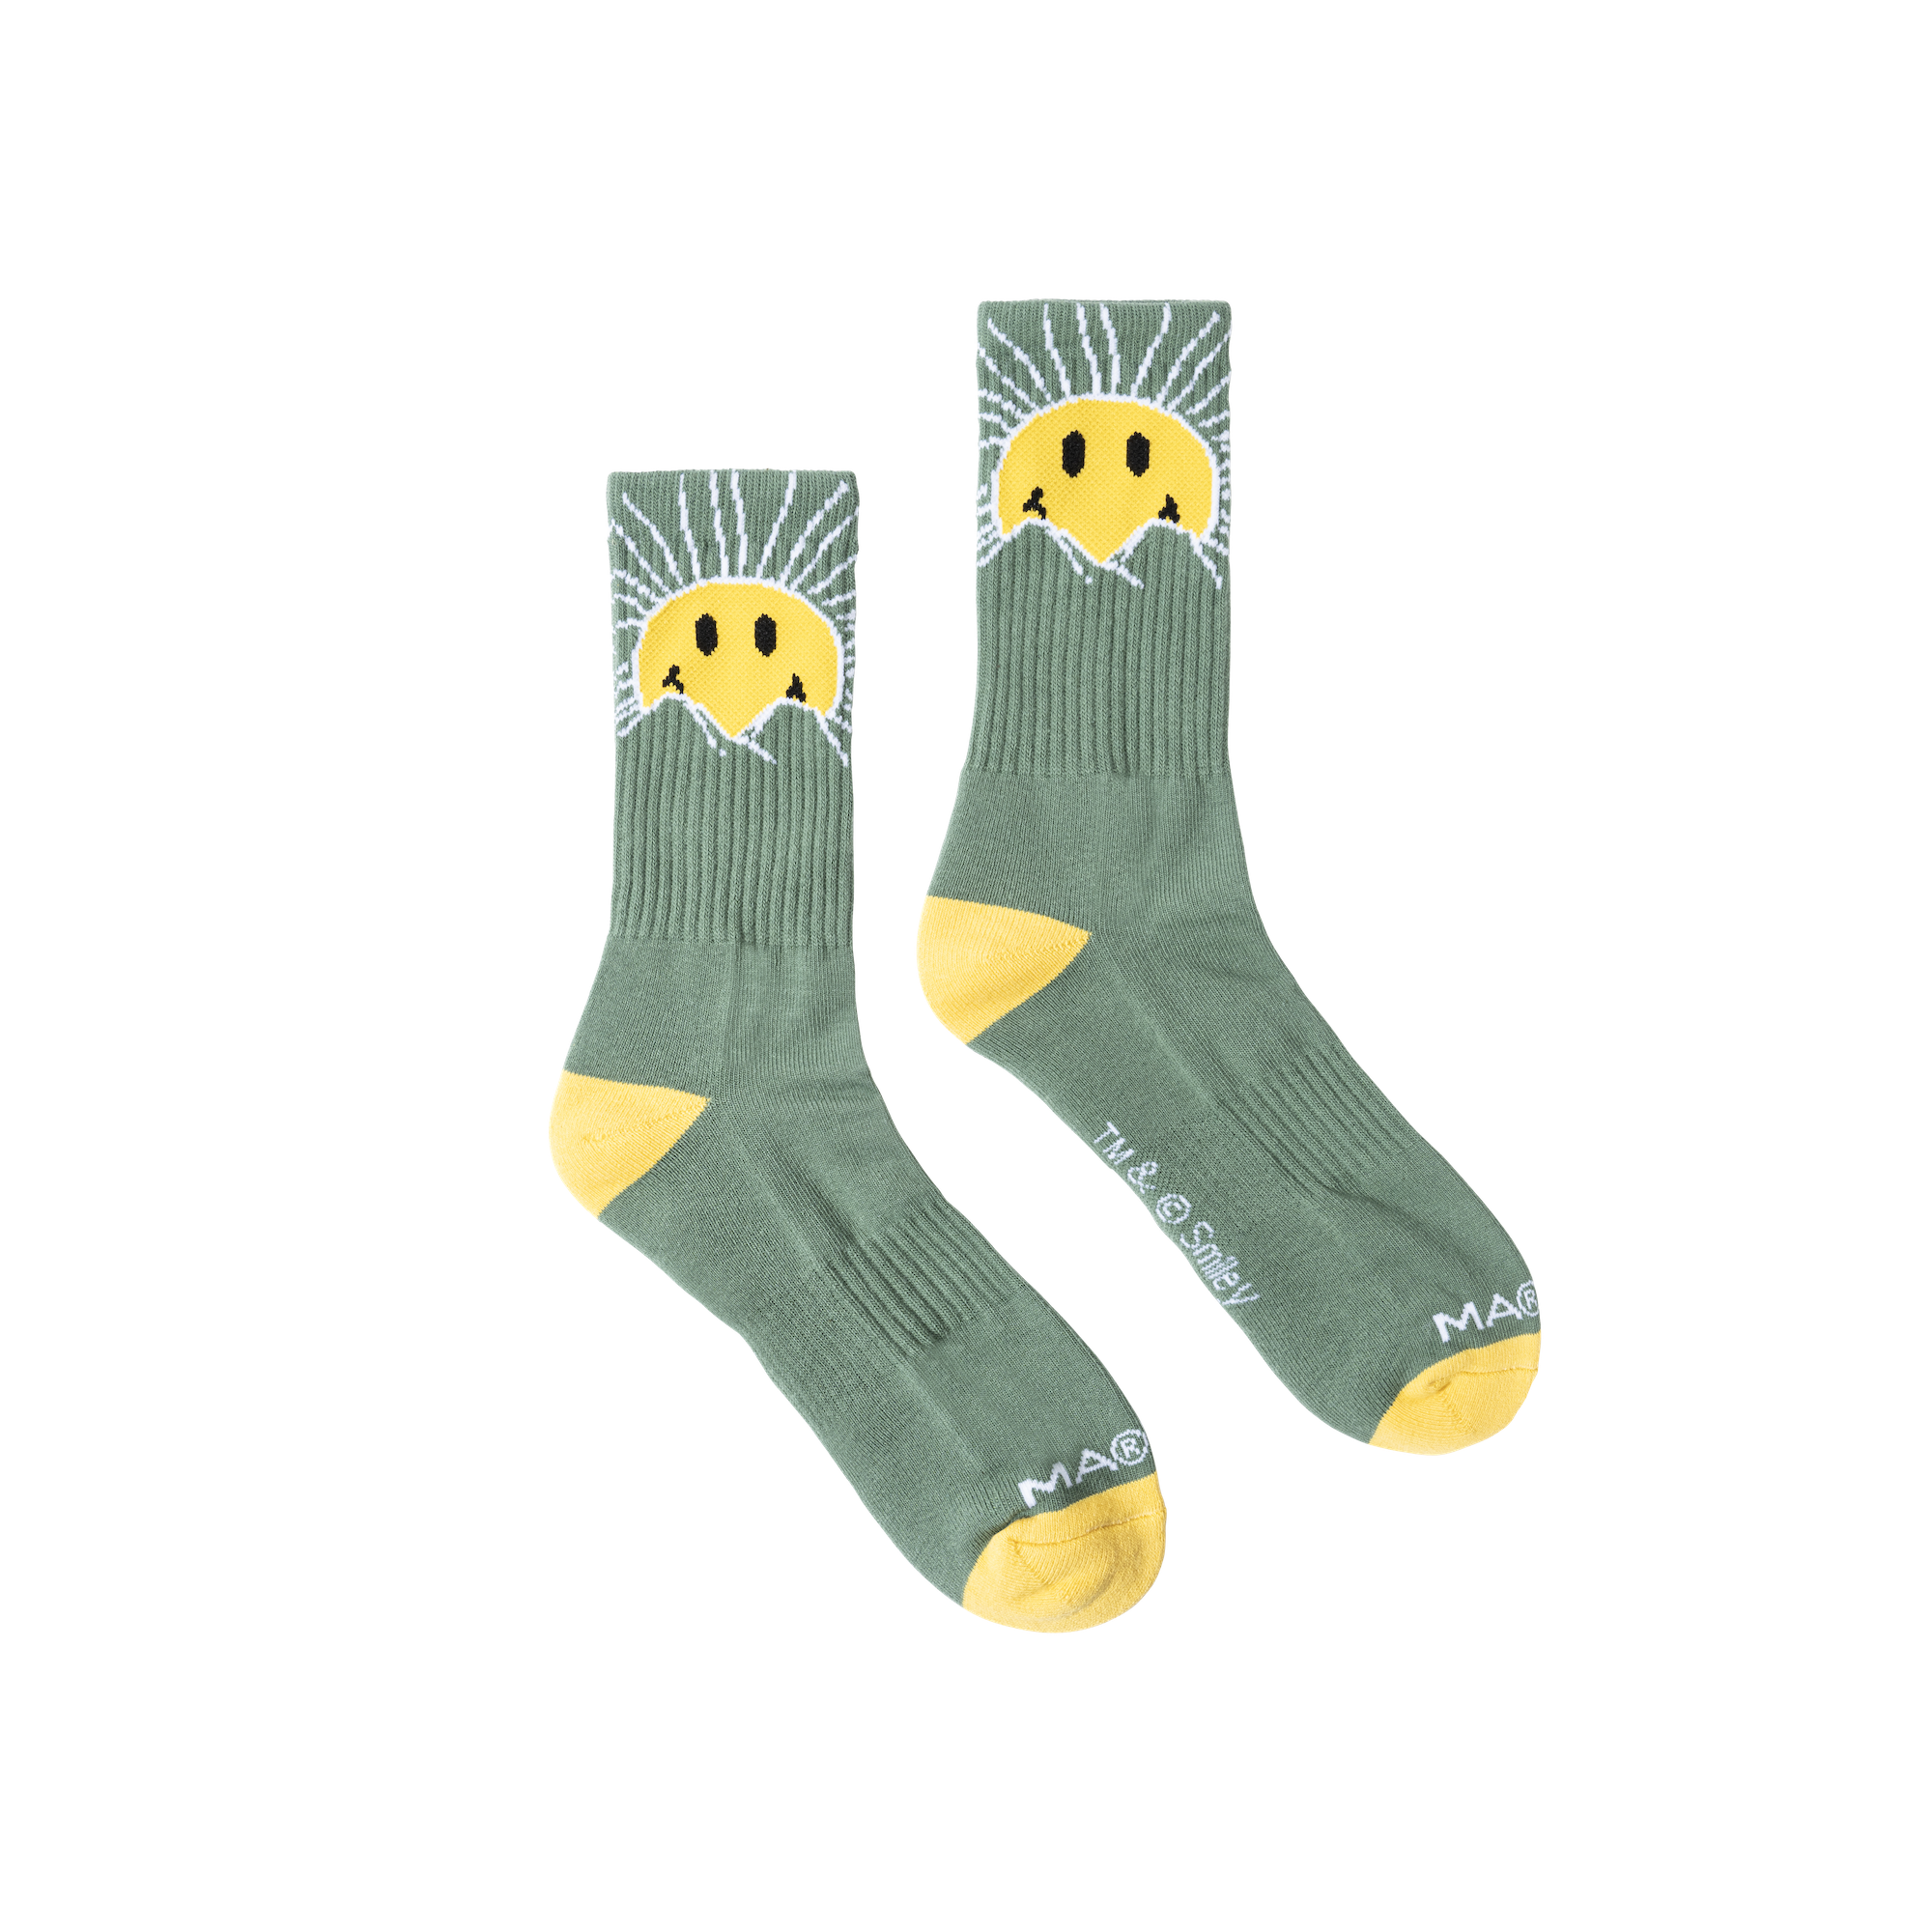 Market Smiley Sunrise Socks "basil"